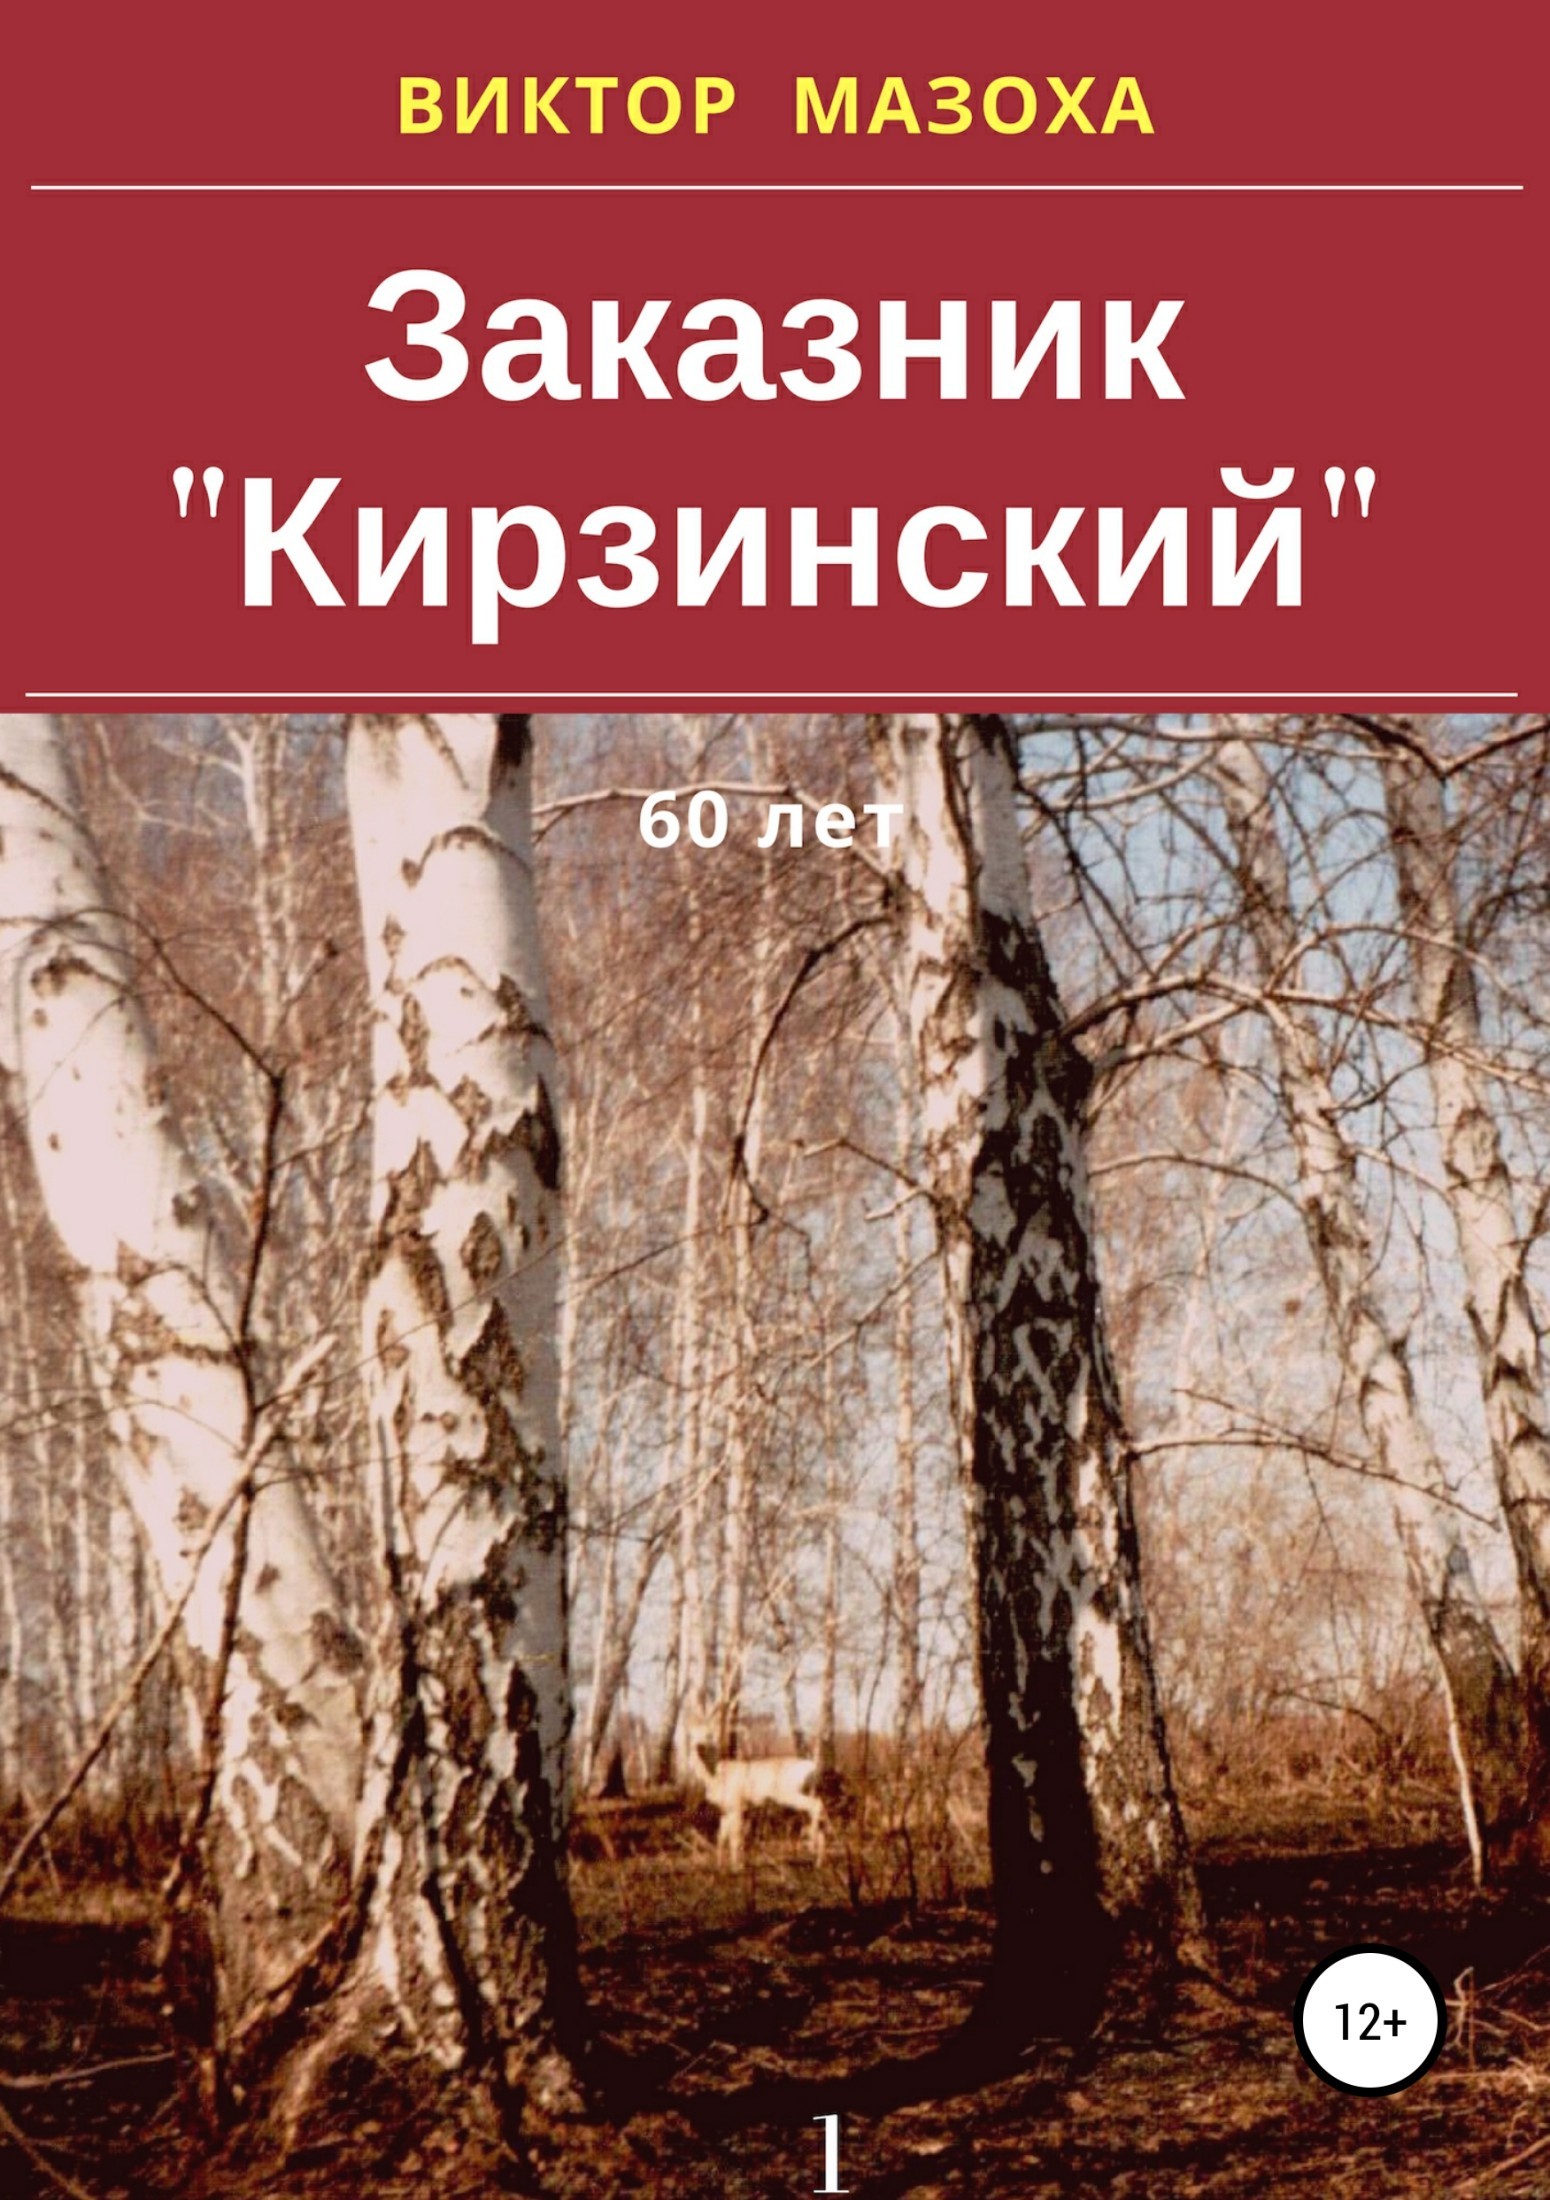 Книга Заказник «Кирзинский» из серии , созданная Виктор Мазоха, может относится к жанру Природа и животные. Стоимость книги Заказник «Кирзинский»  с идентификатором 39500212 составляет 164.00 руб.